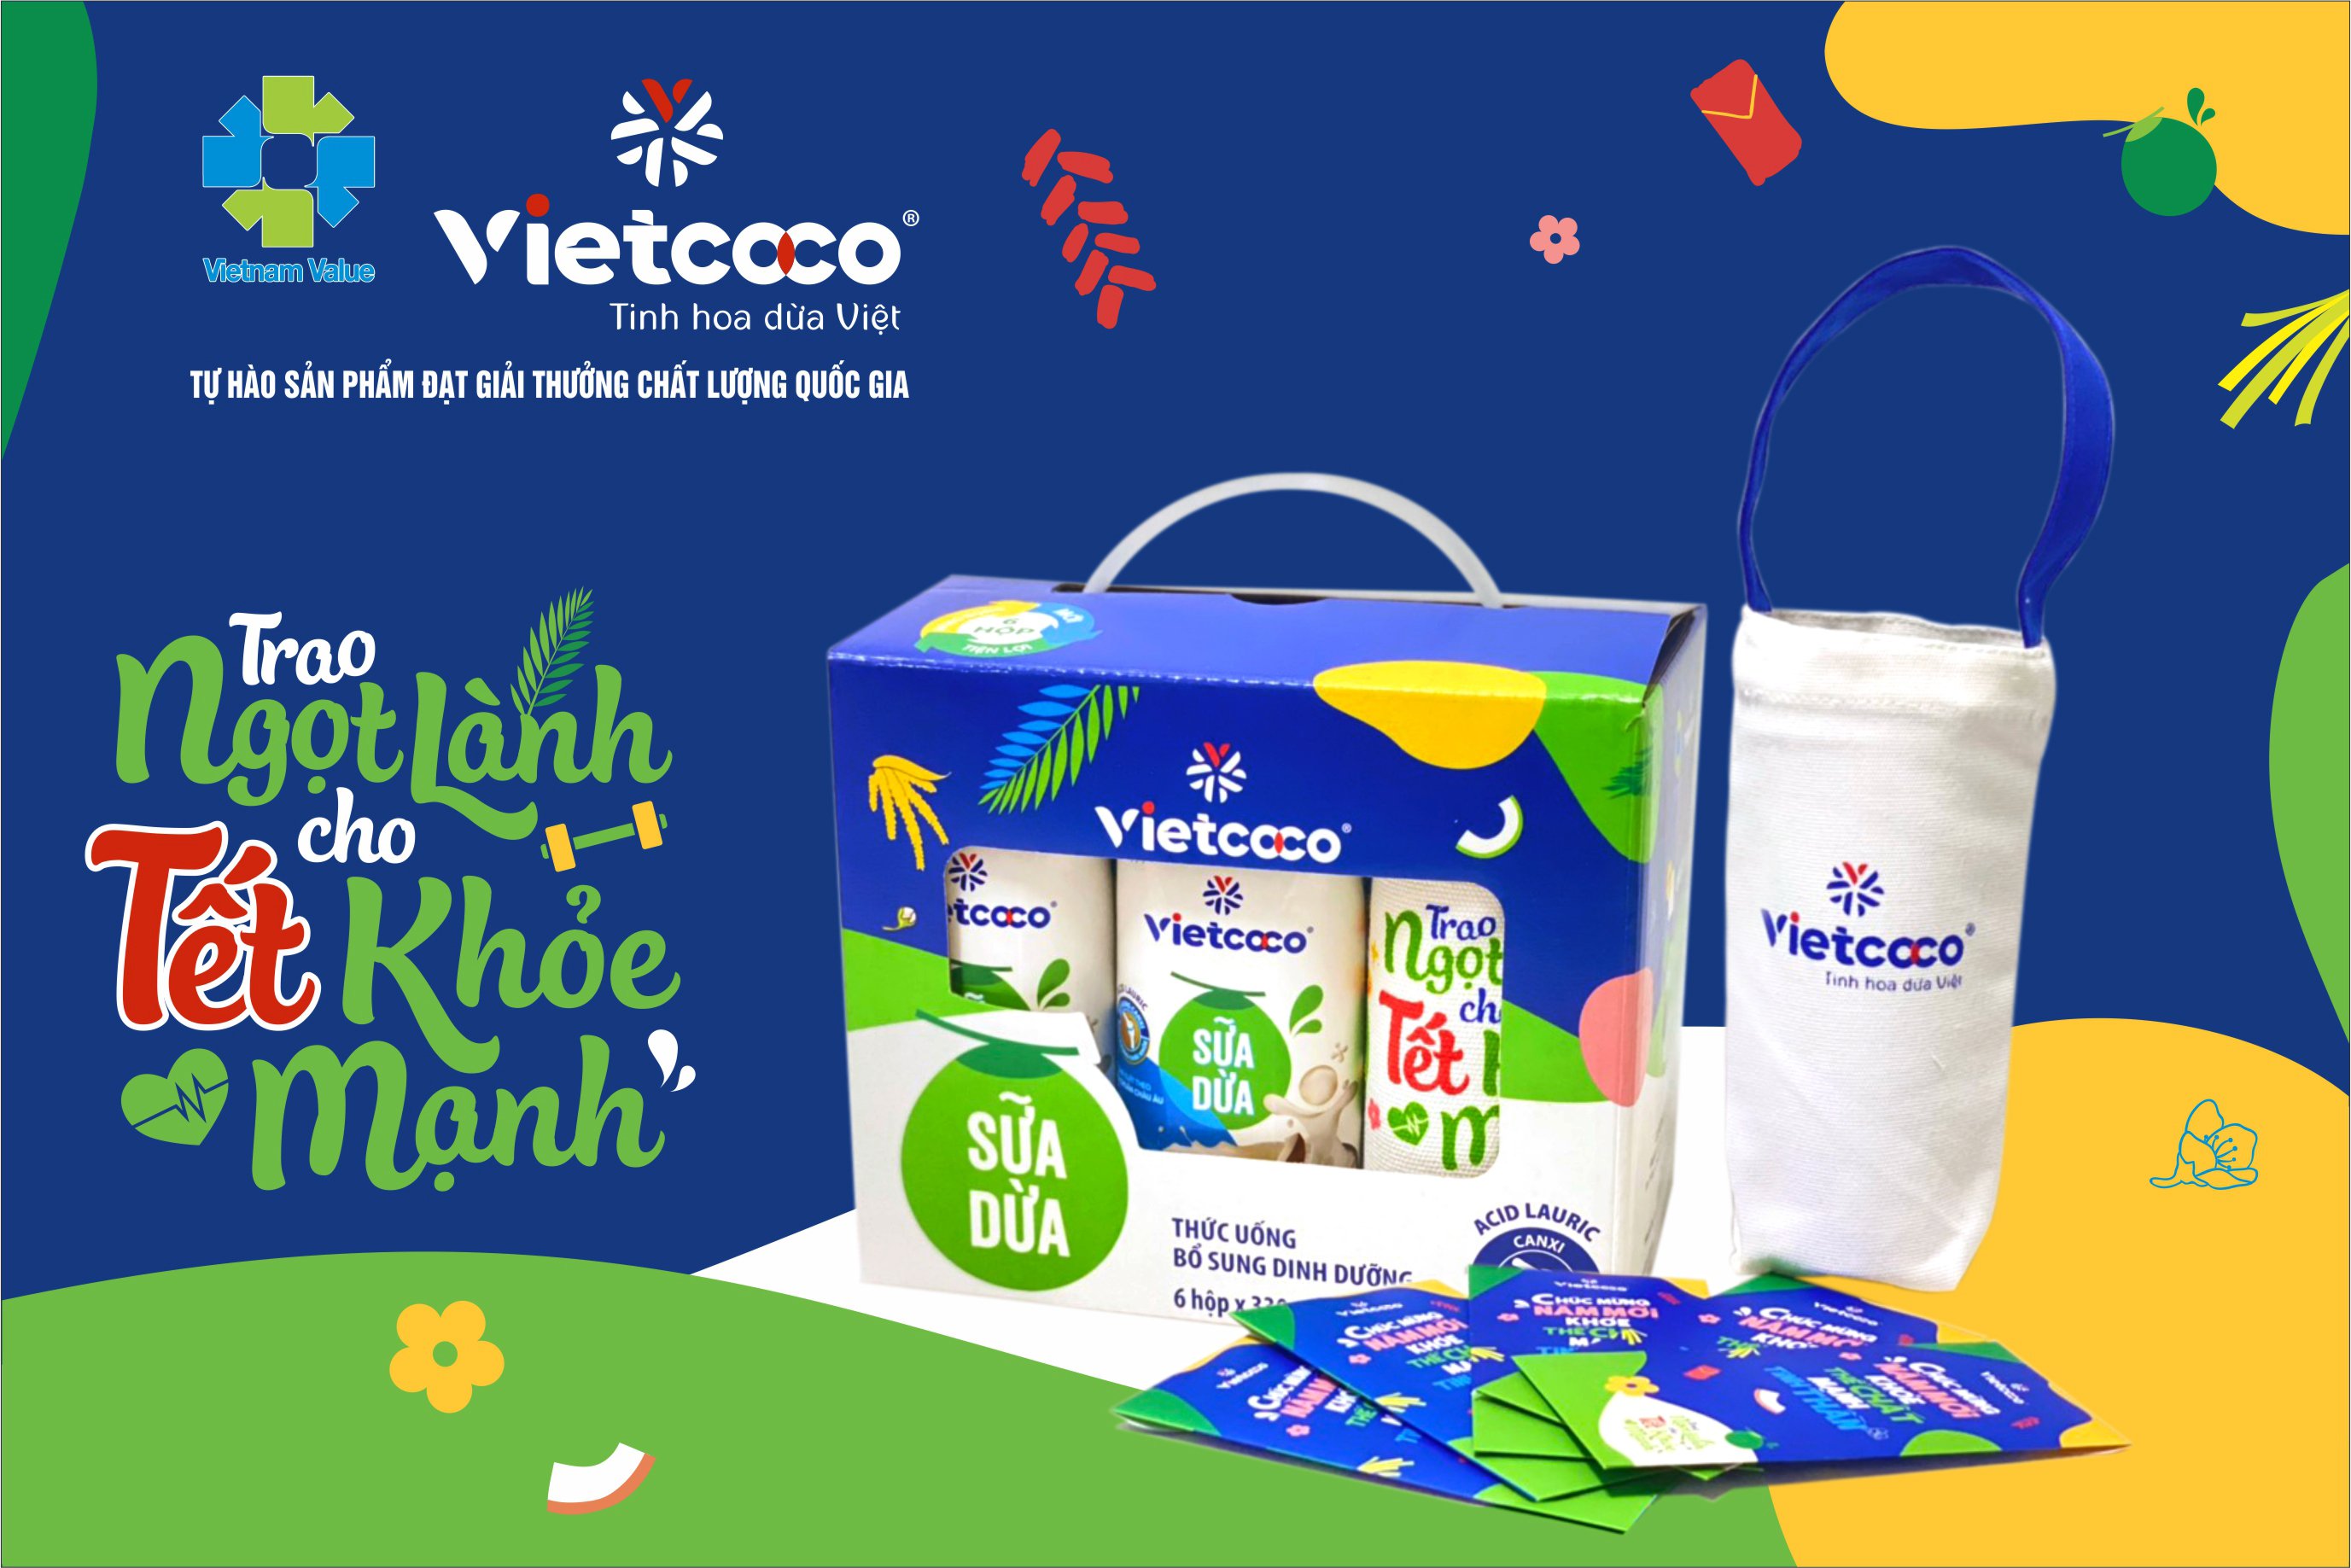 Sữa dừa Vietcoco - Món quà sức khỏe gửi người thân yêu - ảnh 2